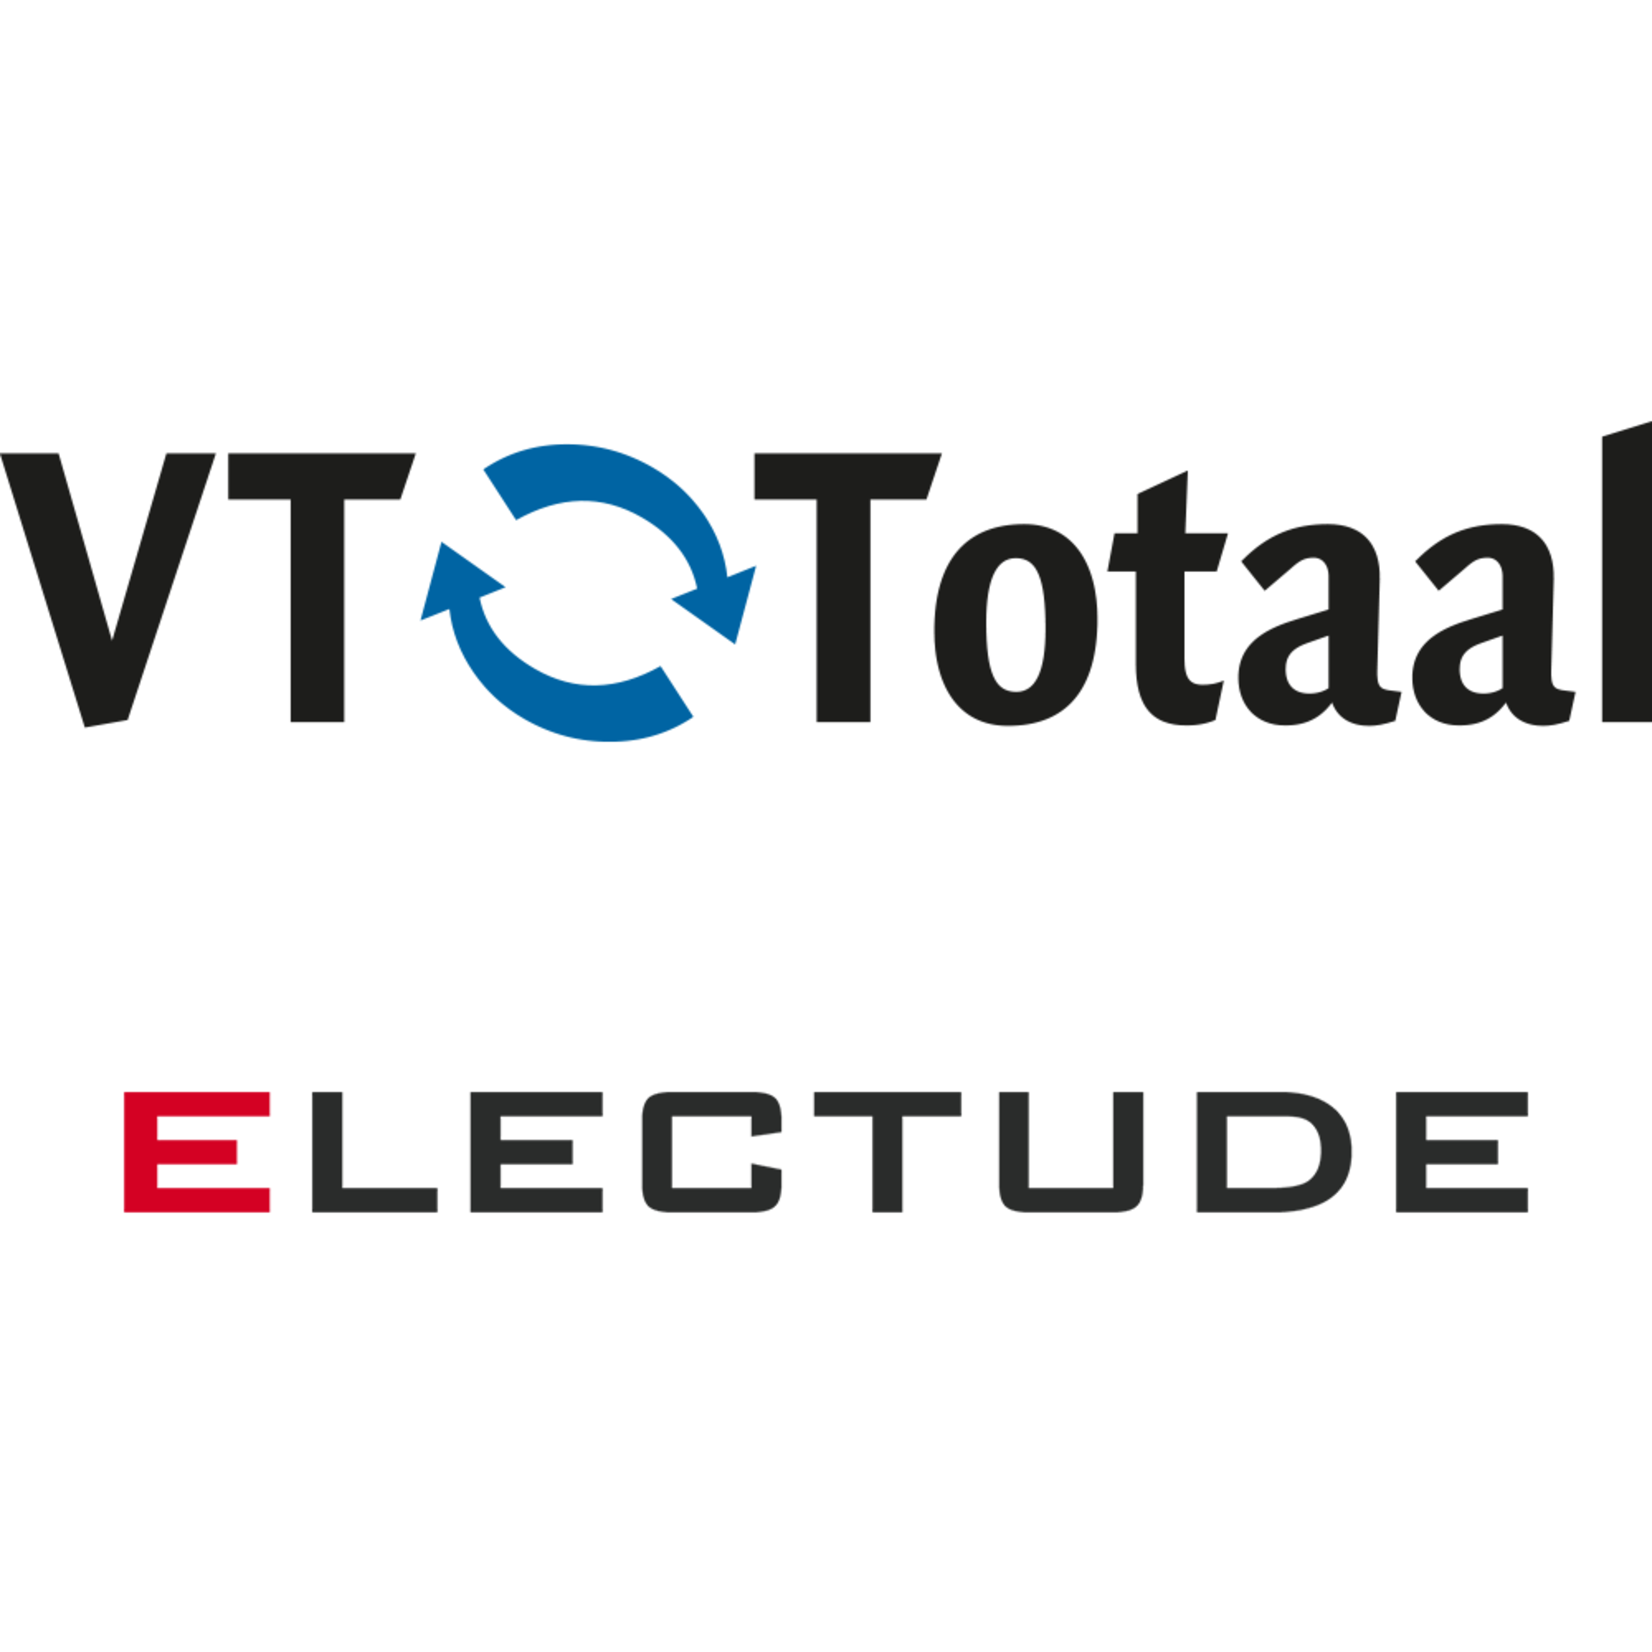 Licentie Electude - combivoucher: vmbo Automotive + MK Autotechniek, VT-Totaal 6 maanden